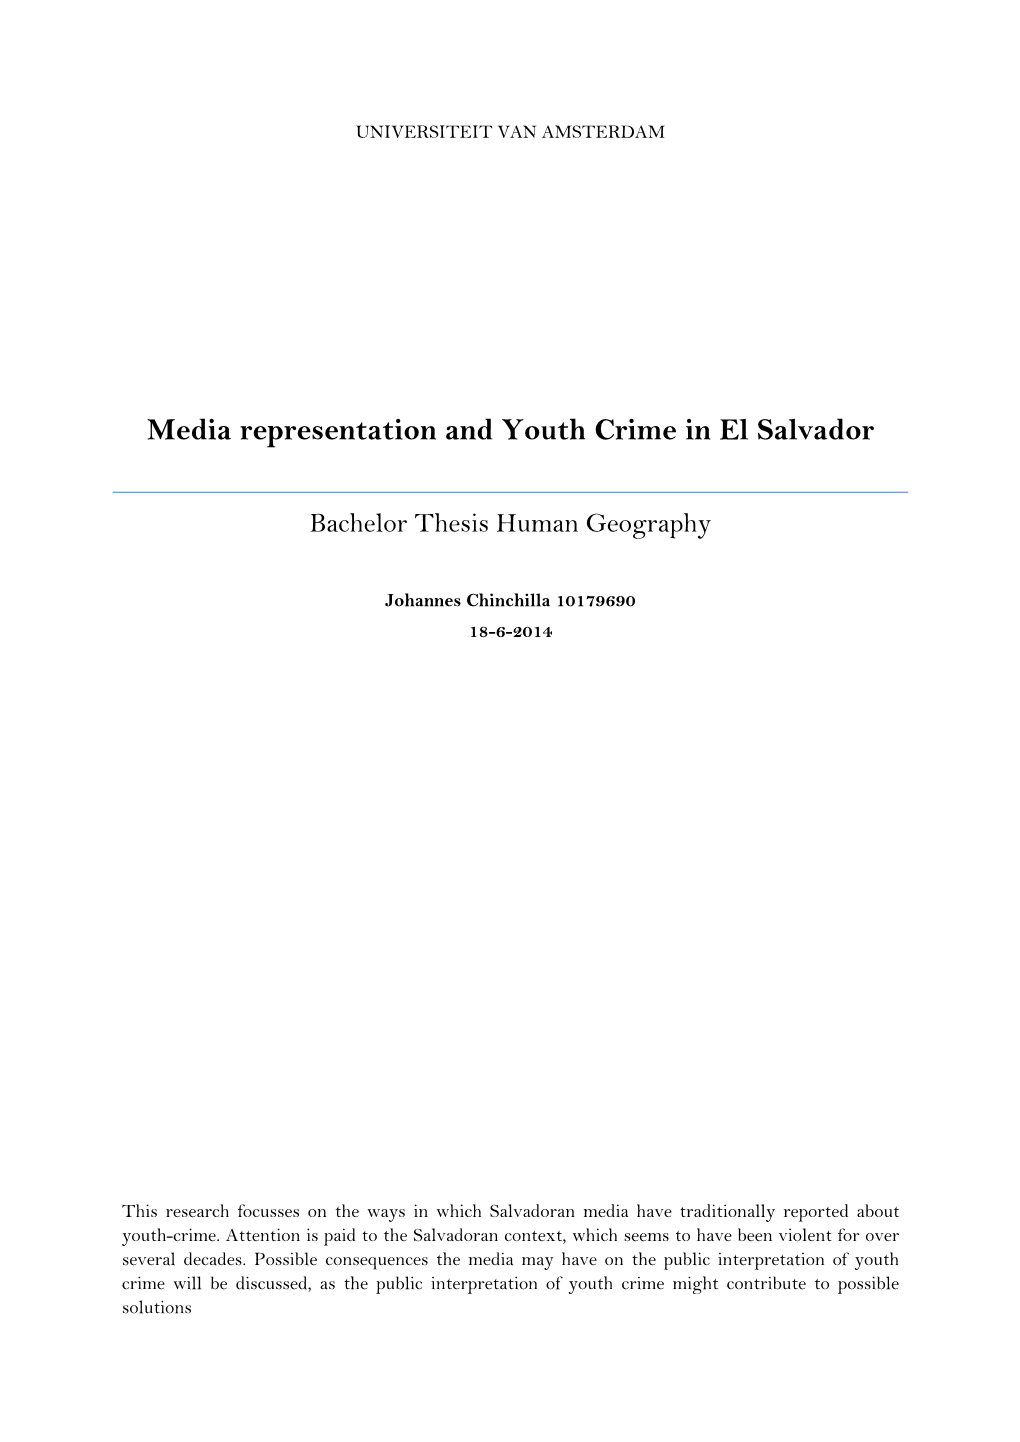 Media Representation and Youth Crime in El Salvador